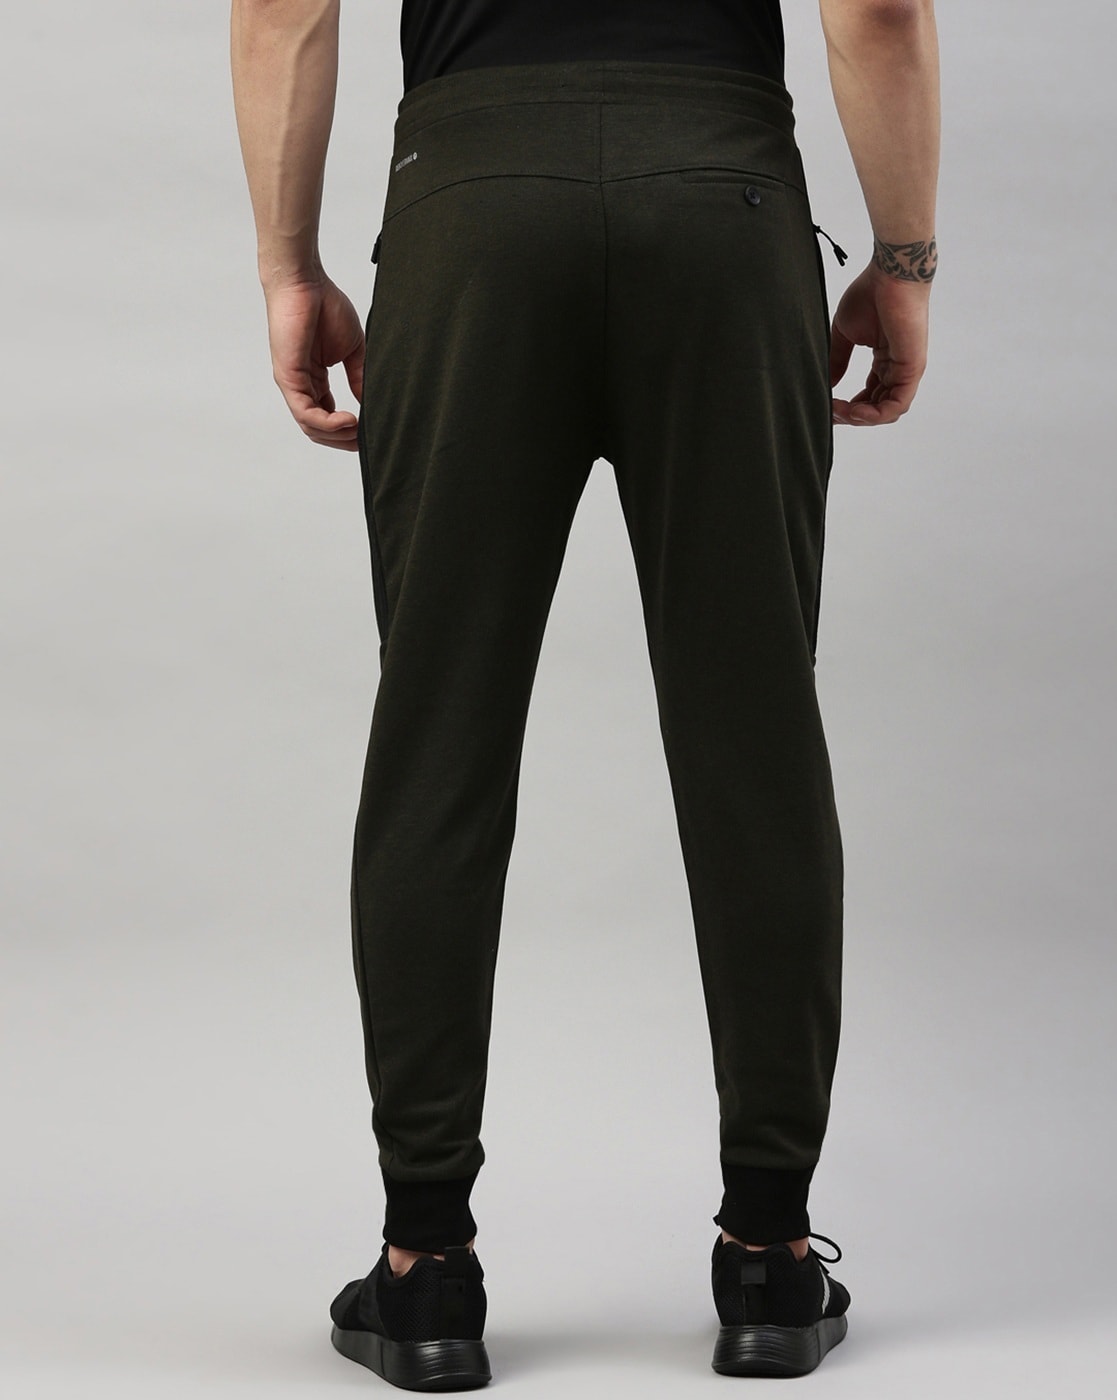 Buy Olive Track Pants for Men by PROLINE Online